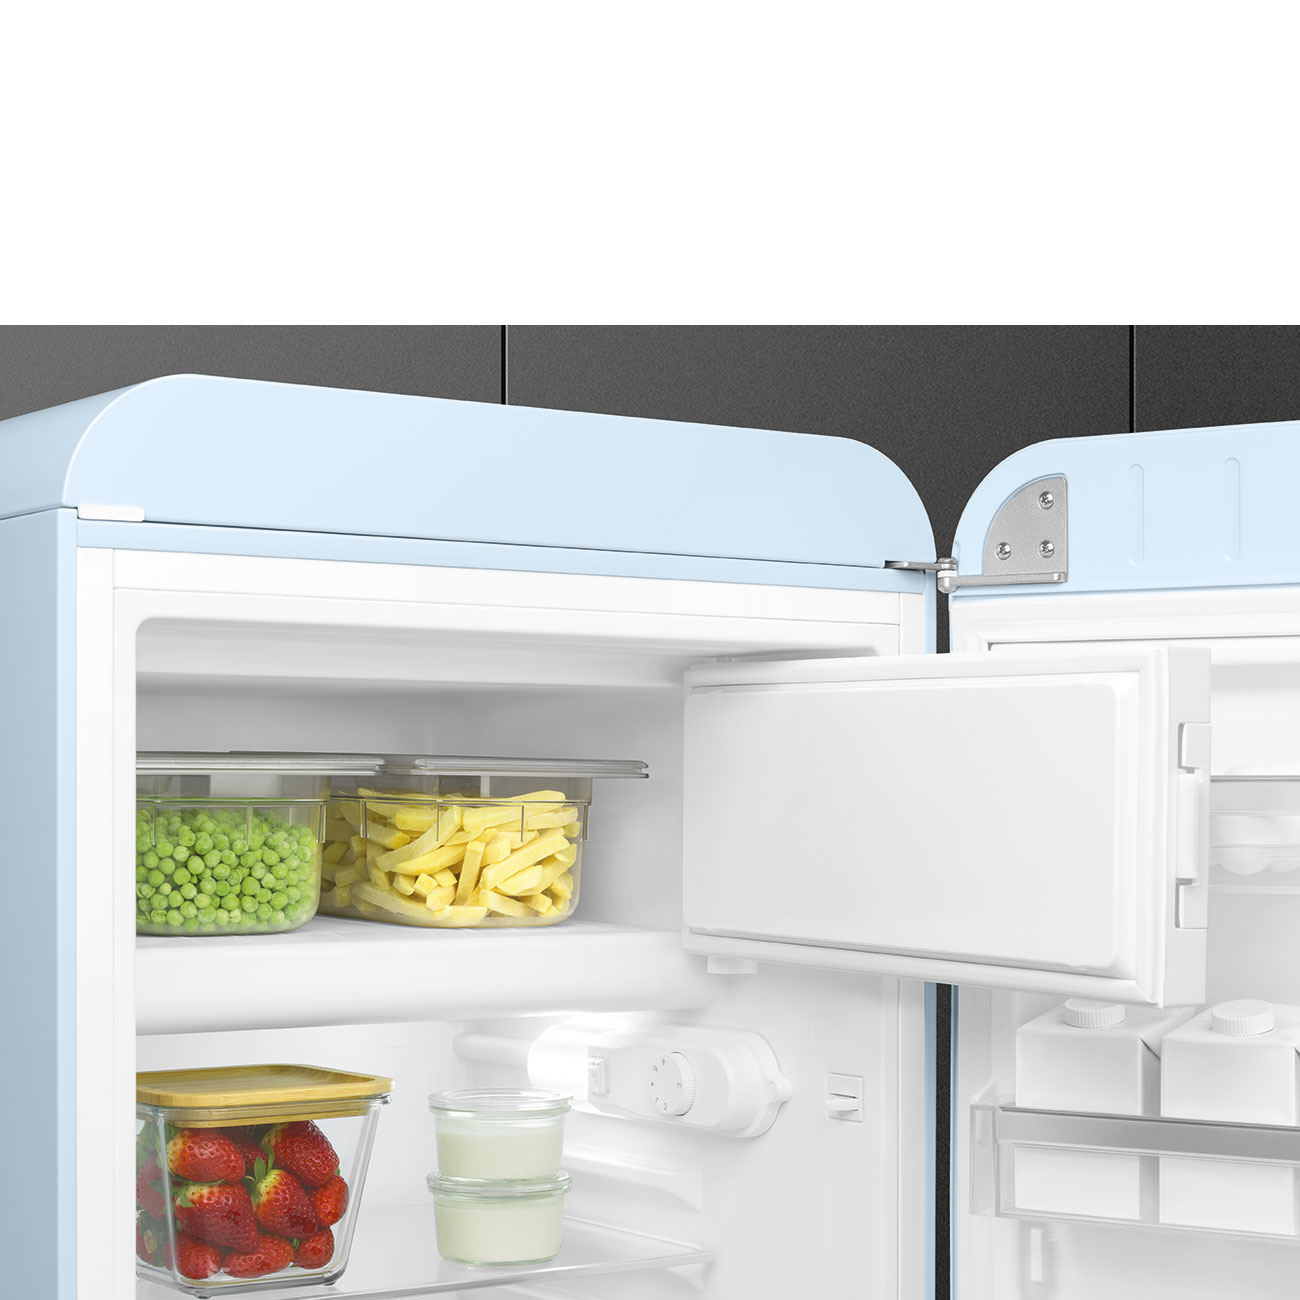 Pastel blue refrigerator - Smeg_10